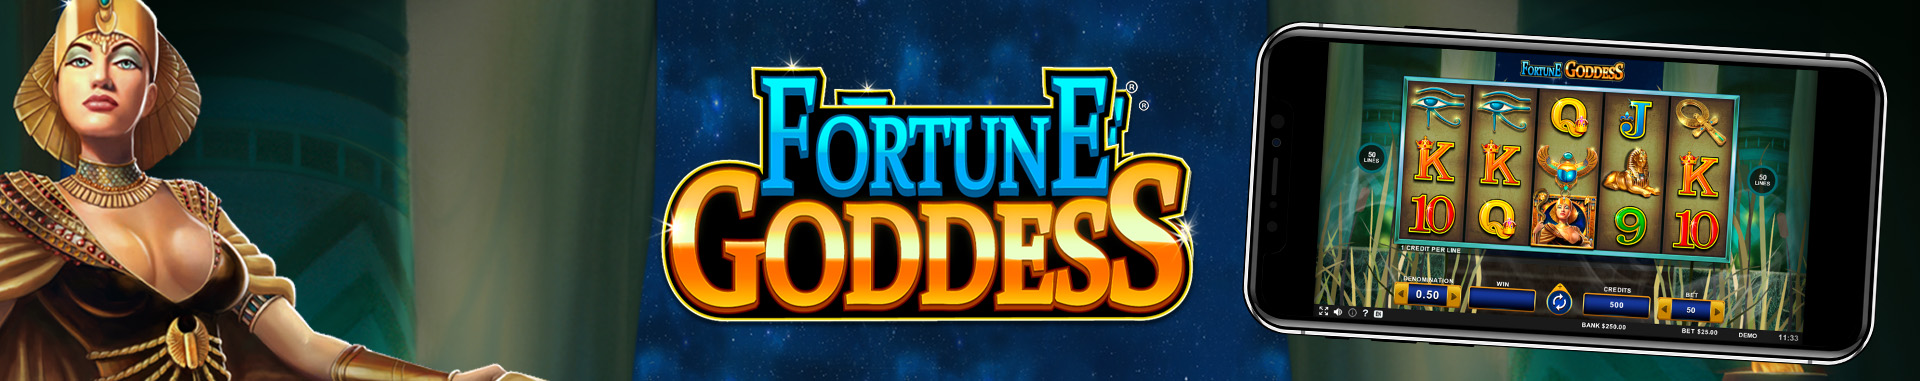 Fortune Goddess 